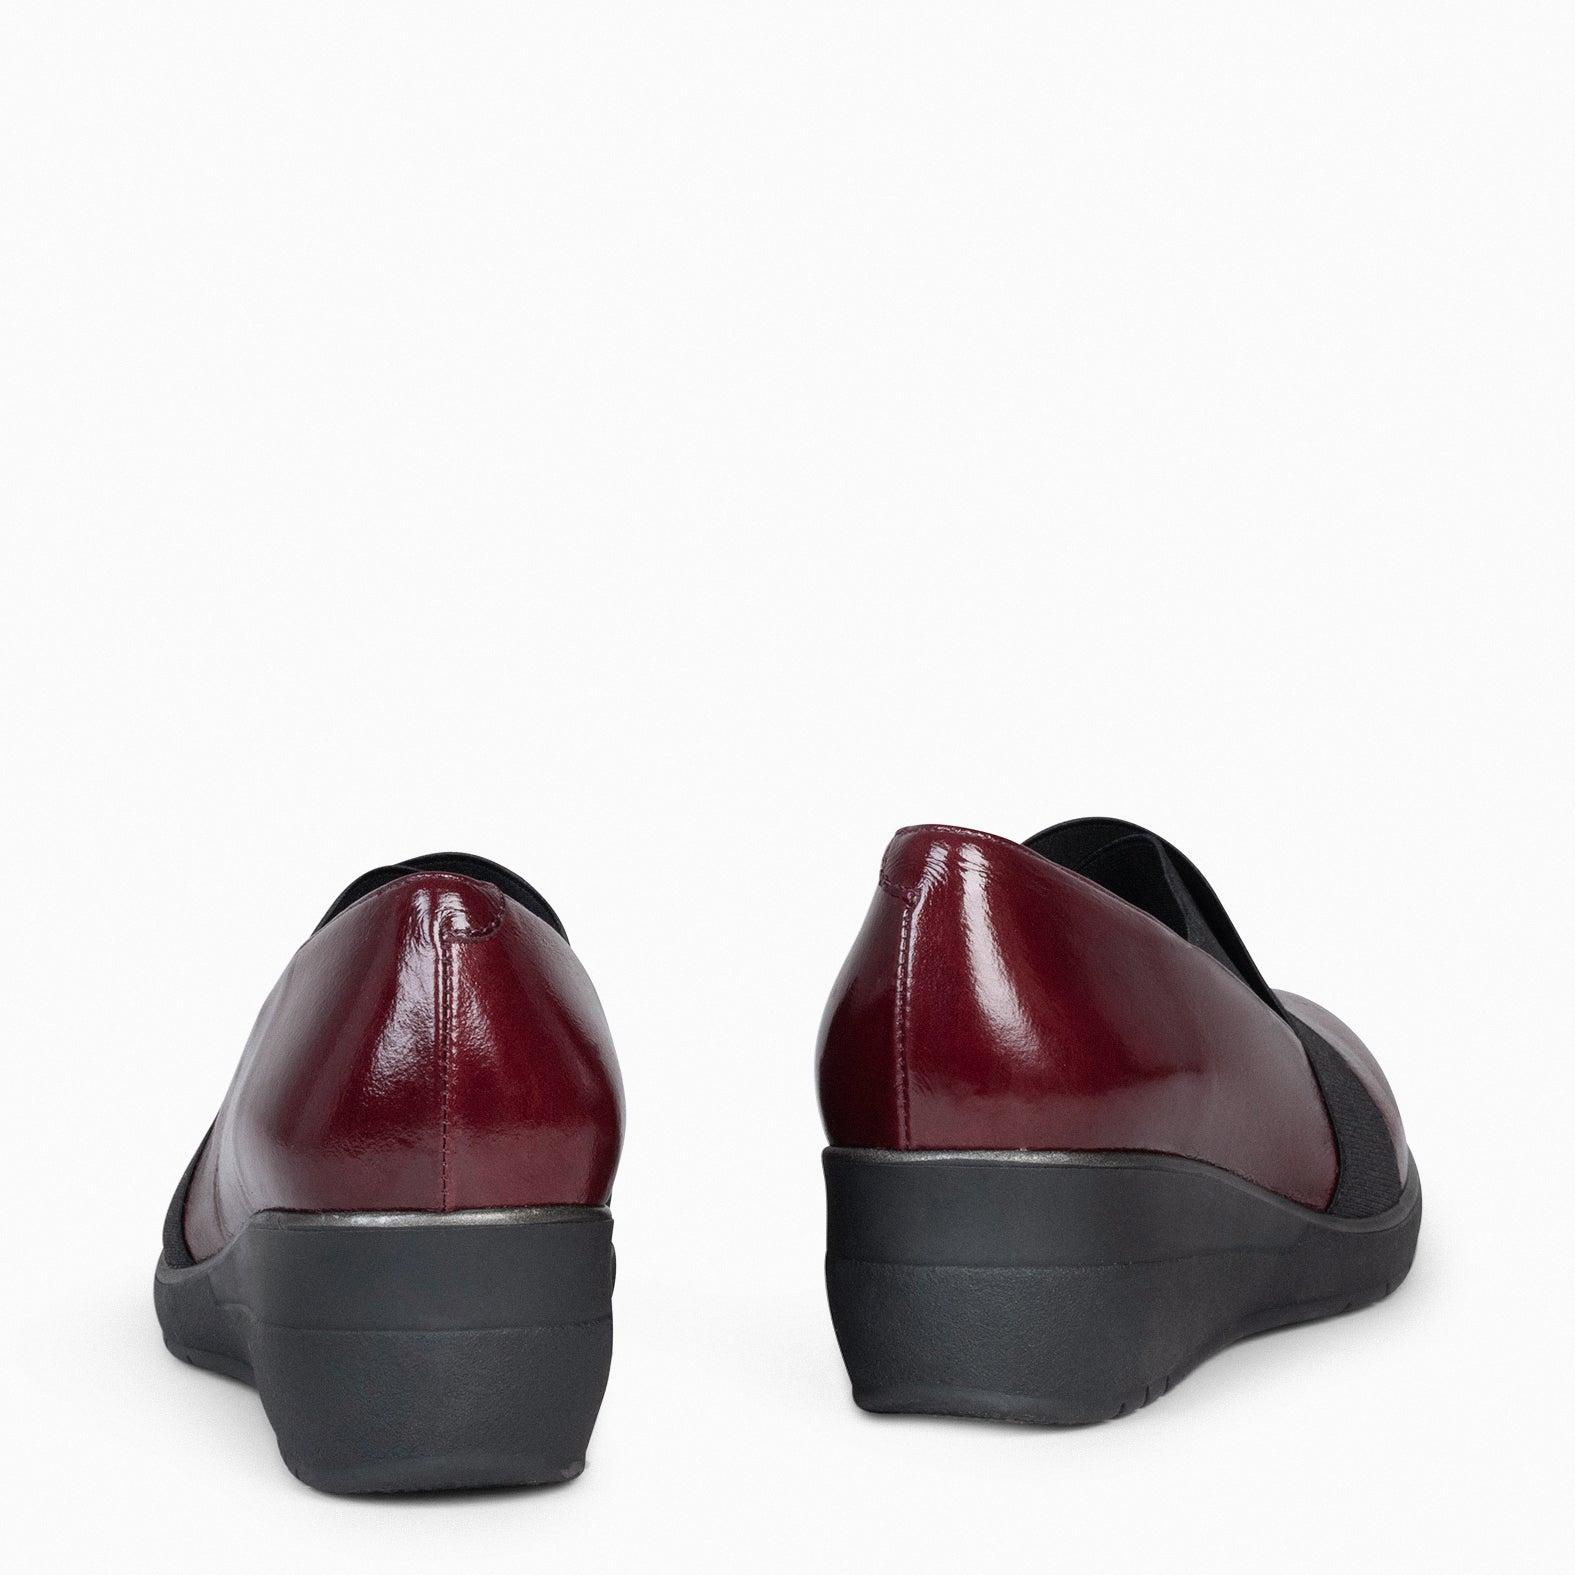 LIA - Chaussures à semelle compensée avec élastiques BURDEOS